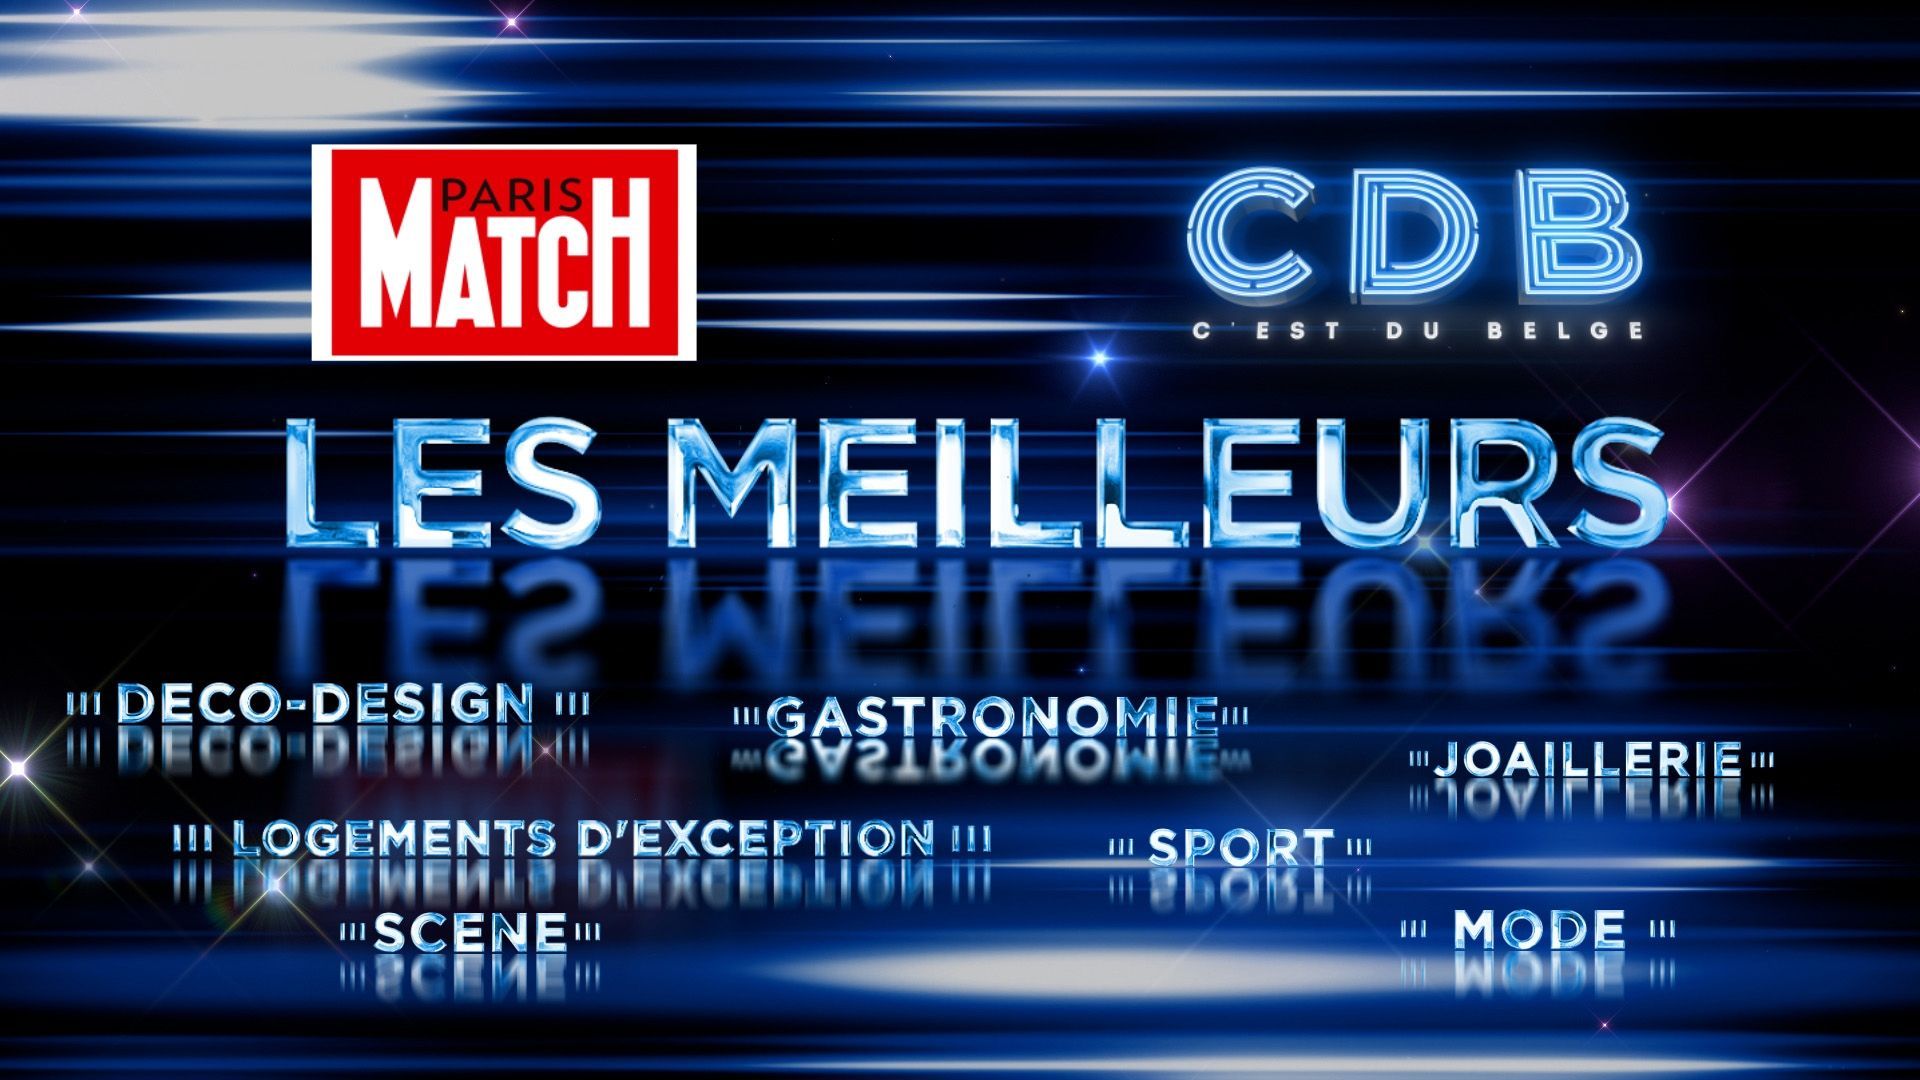 C’est du Belge et Paris Match lancent la 6ème édition du prix « Les Meilleurs 2021 ». 